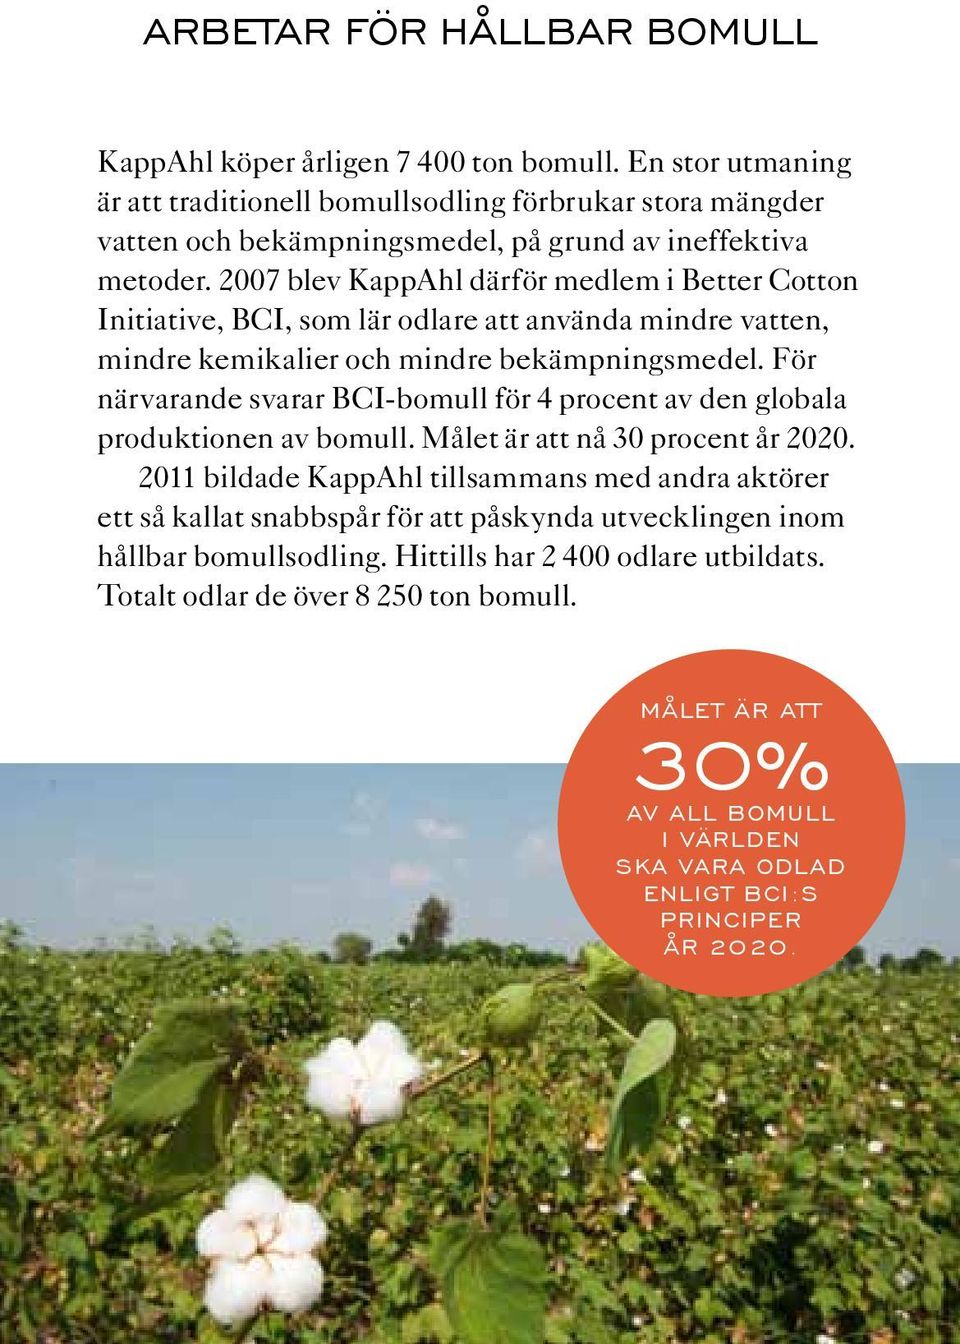 2007 blev KappAhl därför medlem i Better Cotton Initiative, BCI, som lär odlare att använda mindre vatten, mindre kemikalier och mindre bekämpningsmedel.